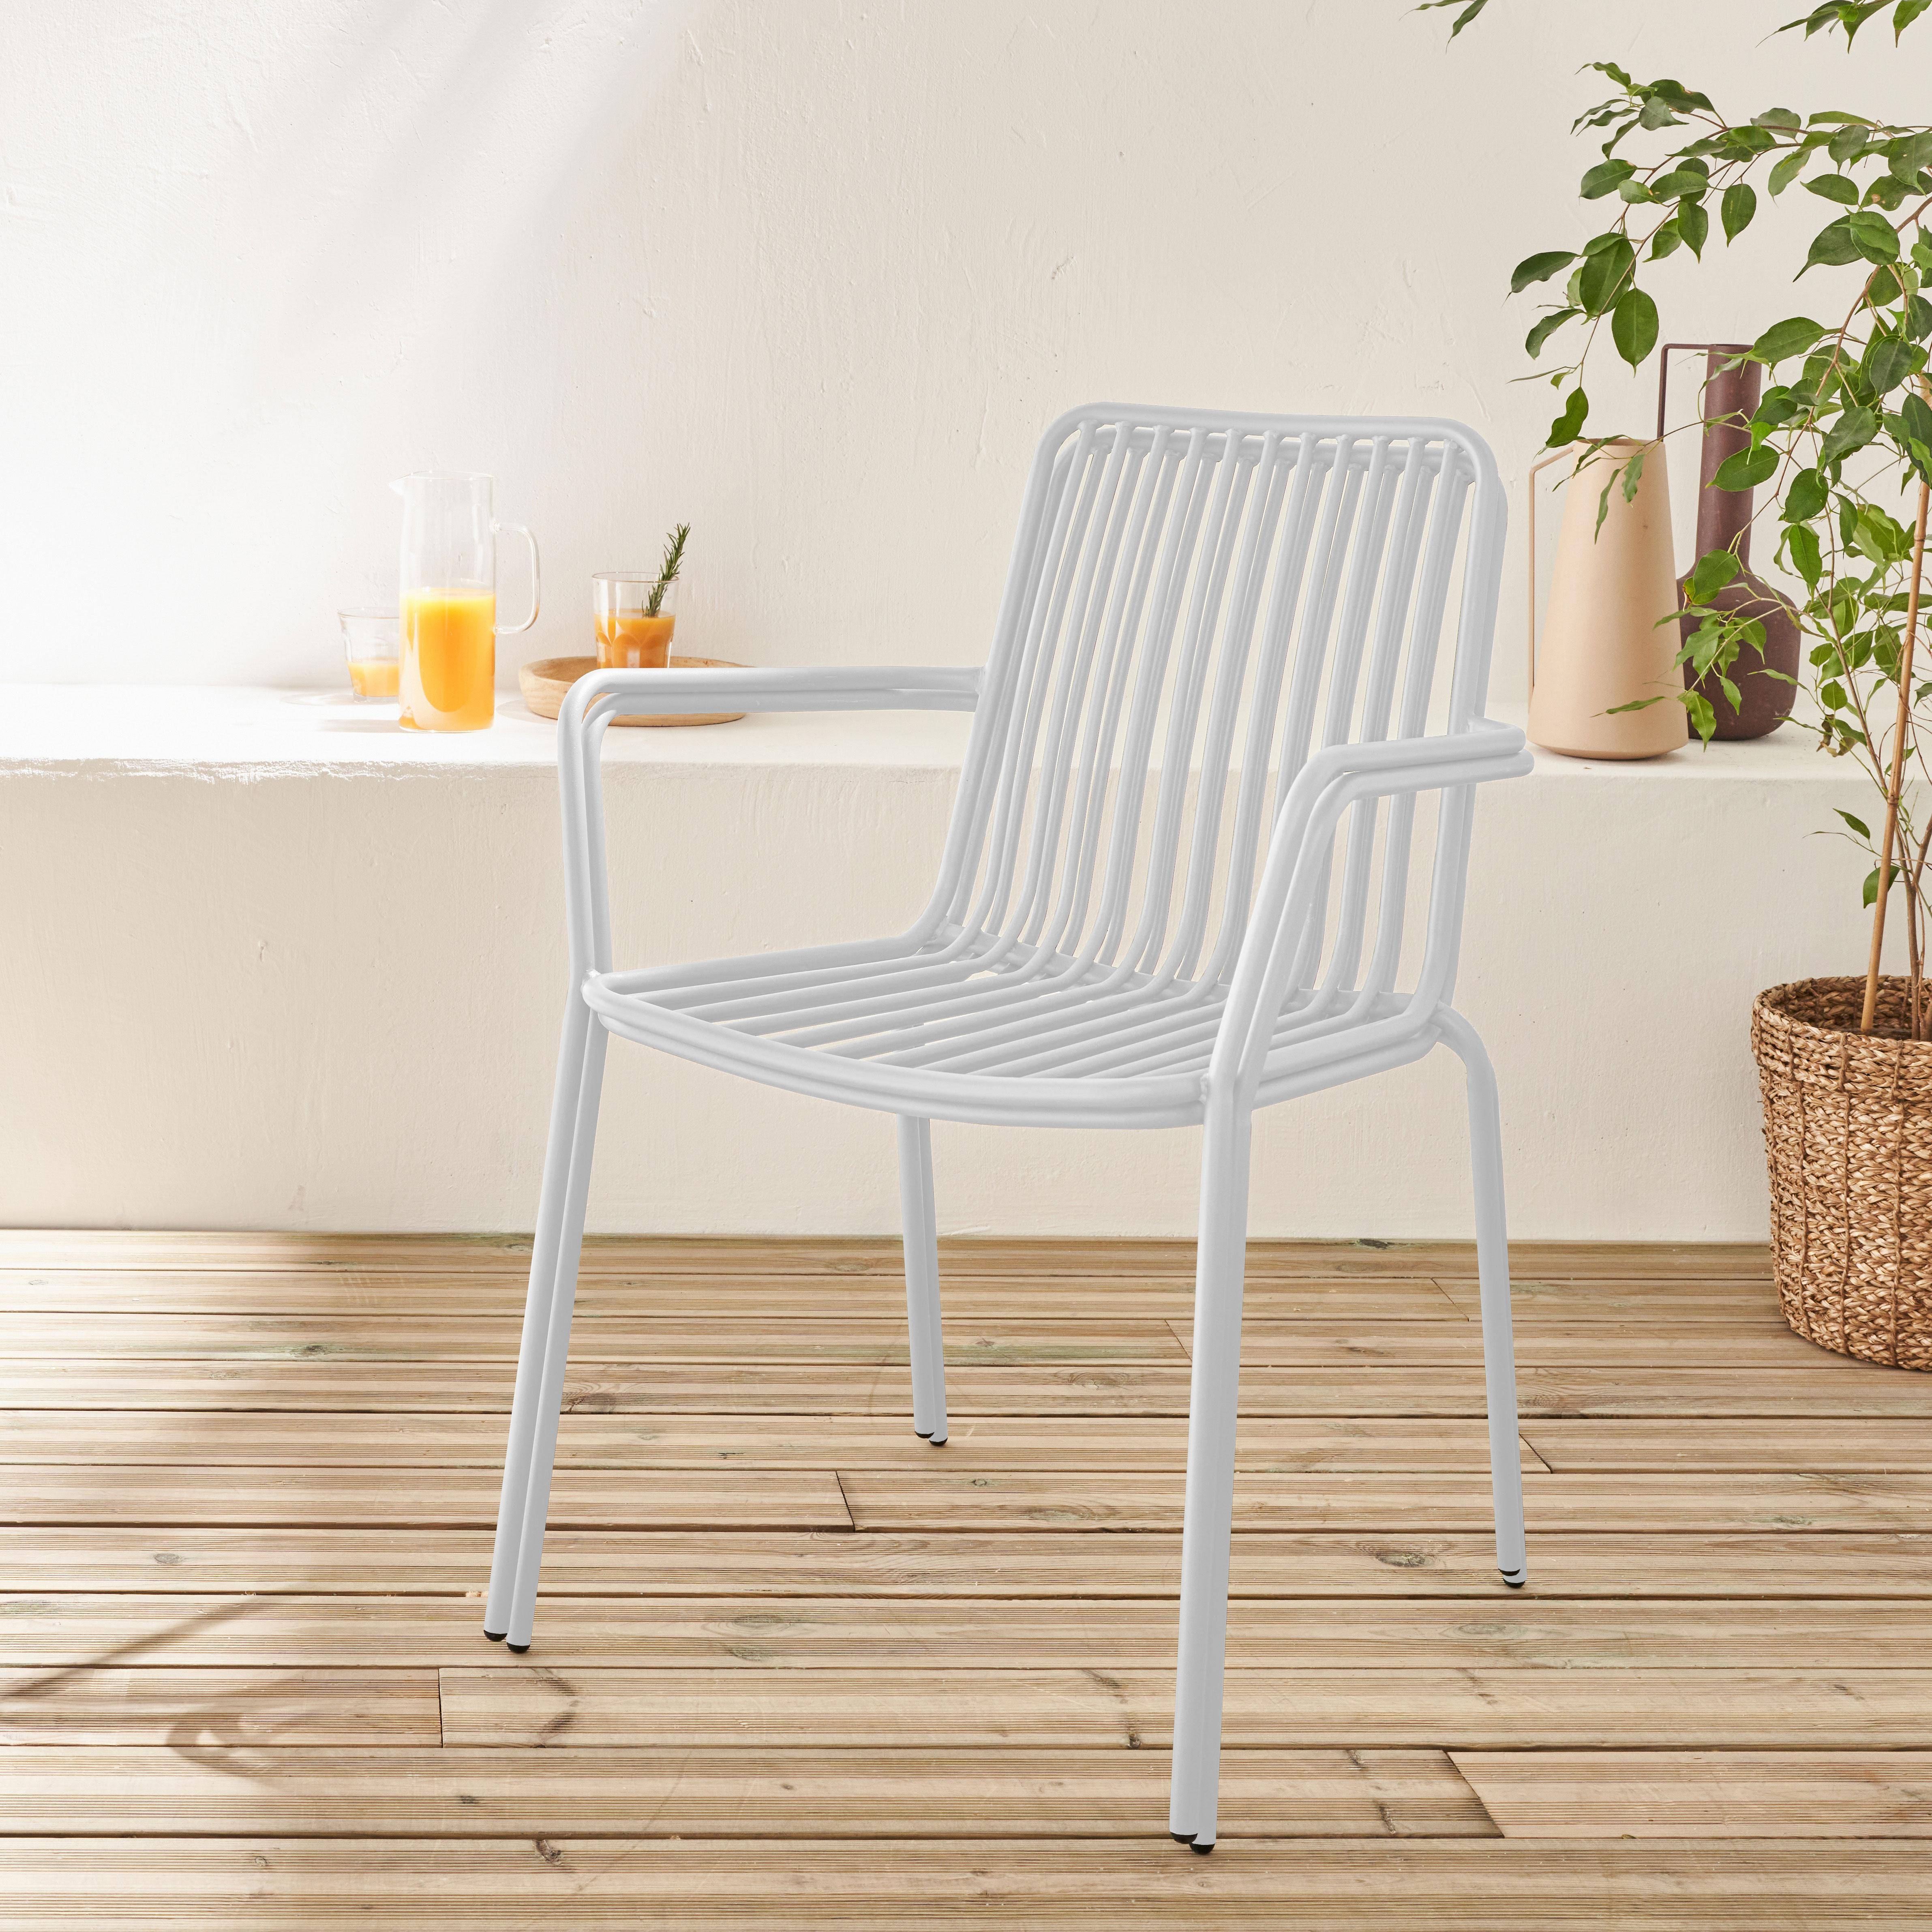 2er Set stapelbare weiße Stühle aus Stahl mit Armlehnen- Florida,sweeek,Photo2